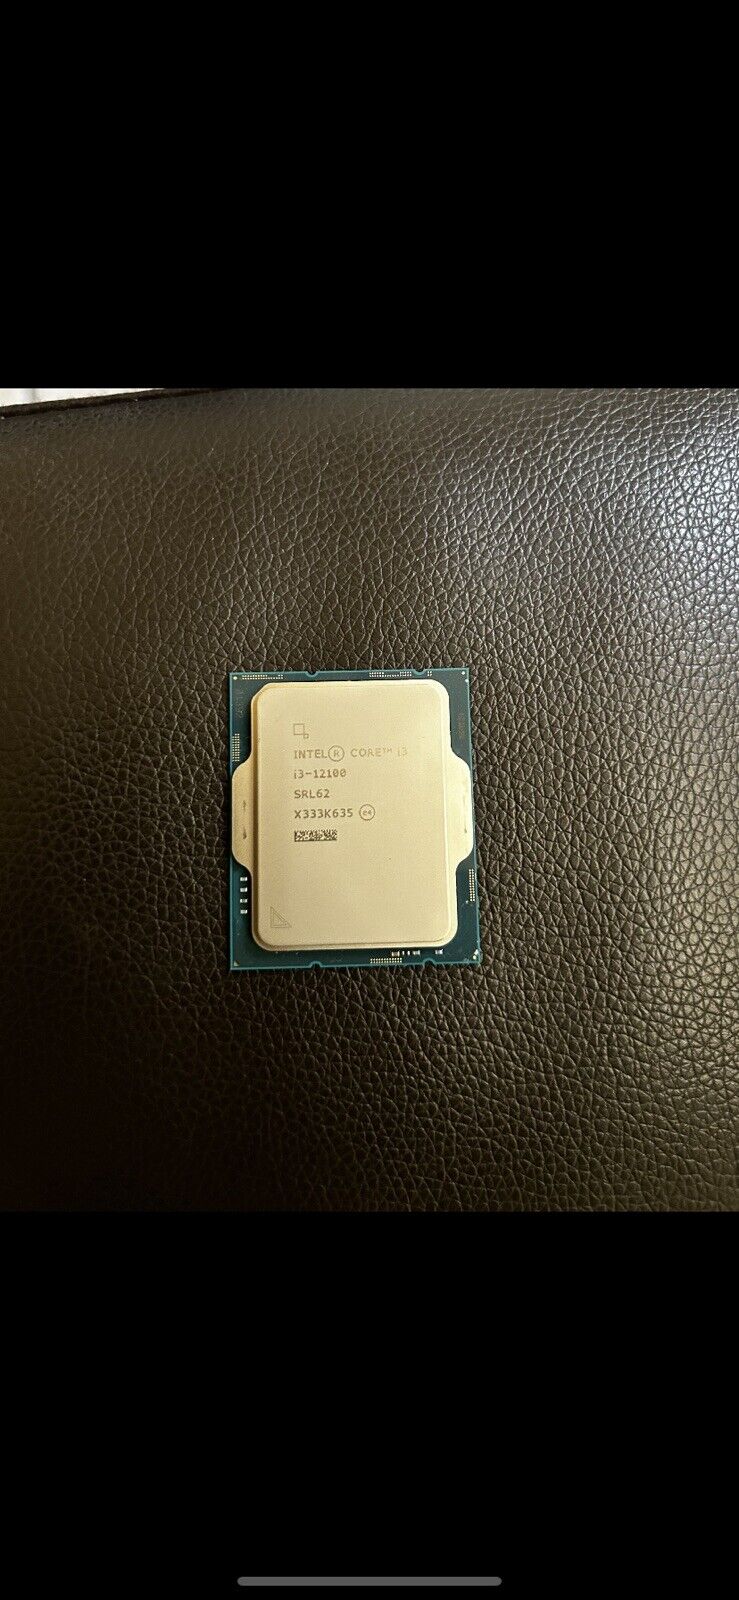 Intel SR35P Dual Core i3-7100T 3.4 GHz LGA 1151 Processor